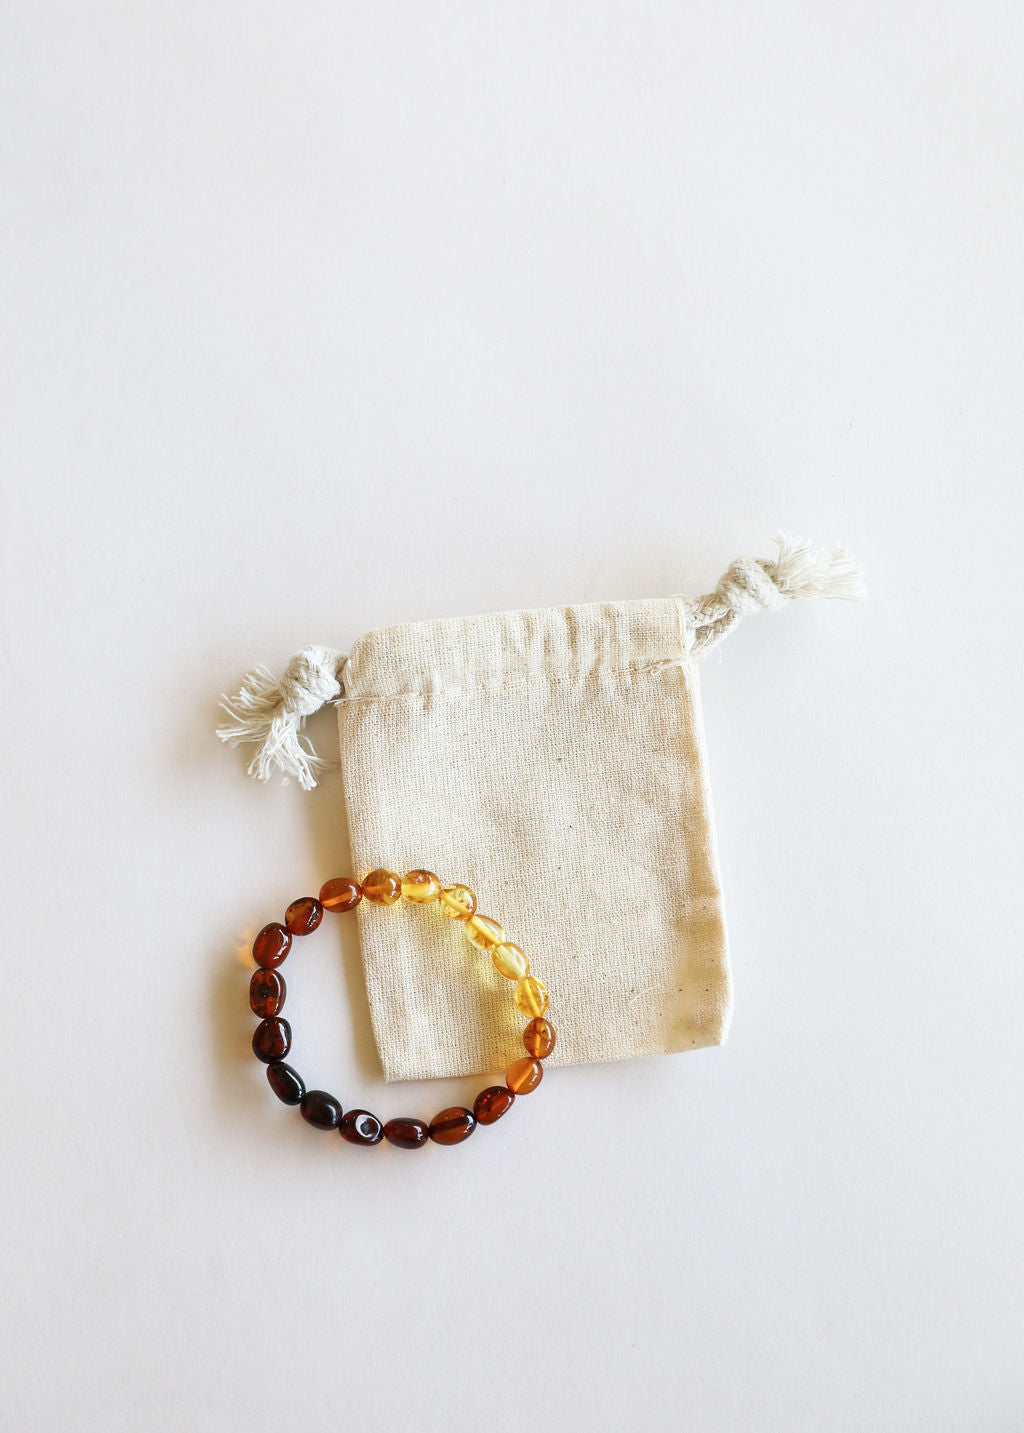 Polished Ombre Baltic Amber Bracelet || Adult